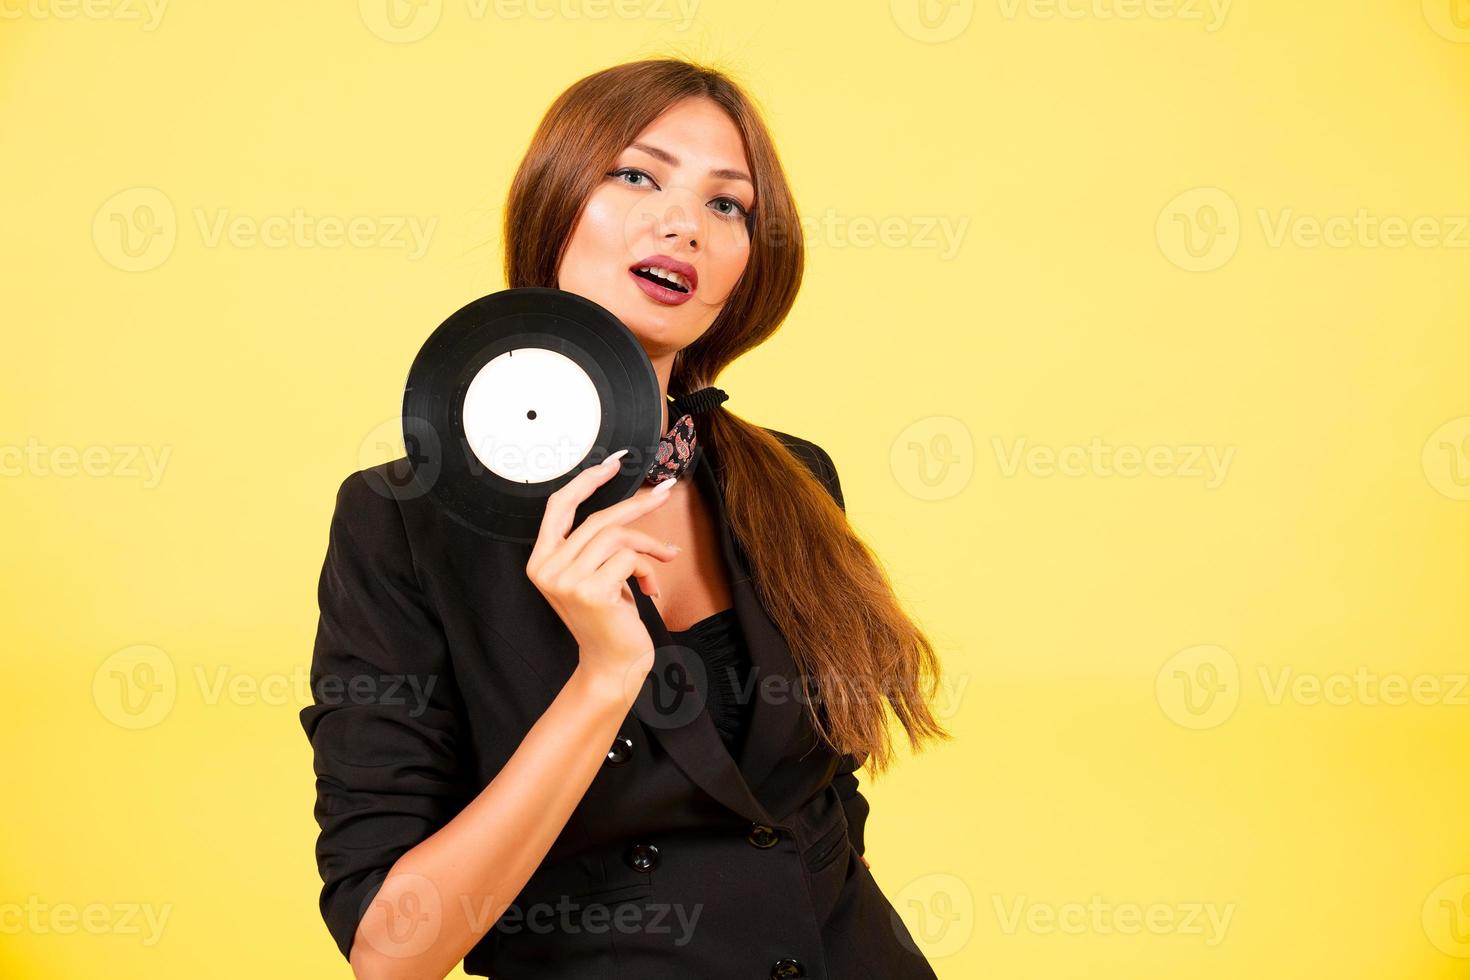 flicka i en svart kostym på en gul bakgrund med en spela in i henne händer, musik, de flicka visar känslor foto